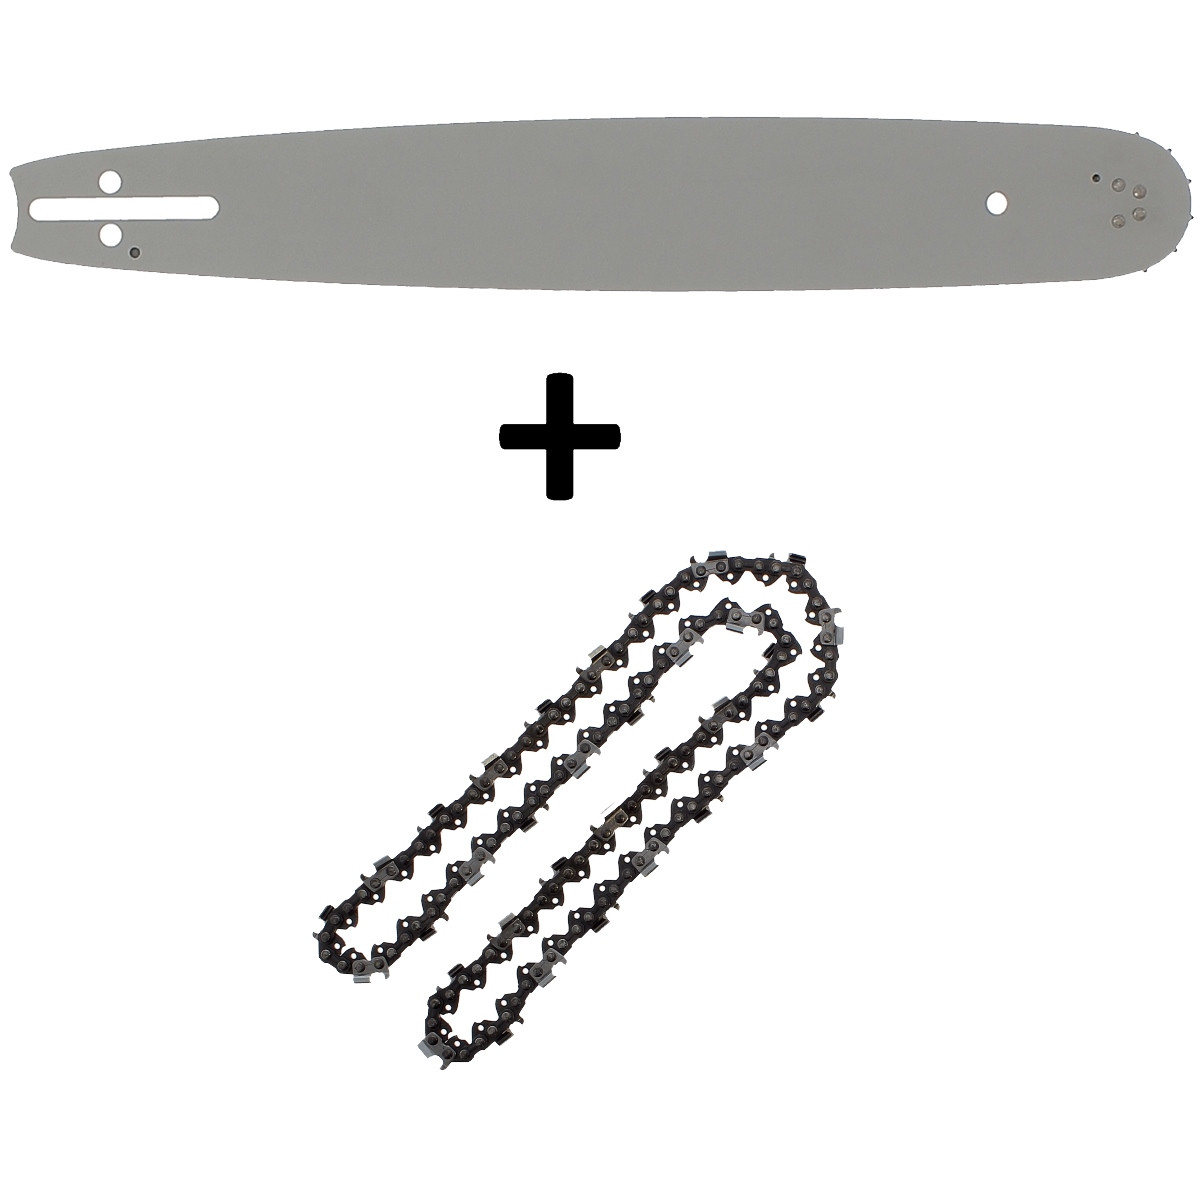 Guide 16 pouces (40 cm) avec chaîne 66 maillons pour tronçonneuse